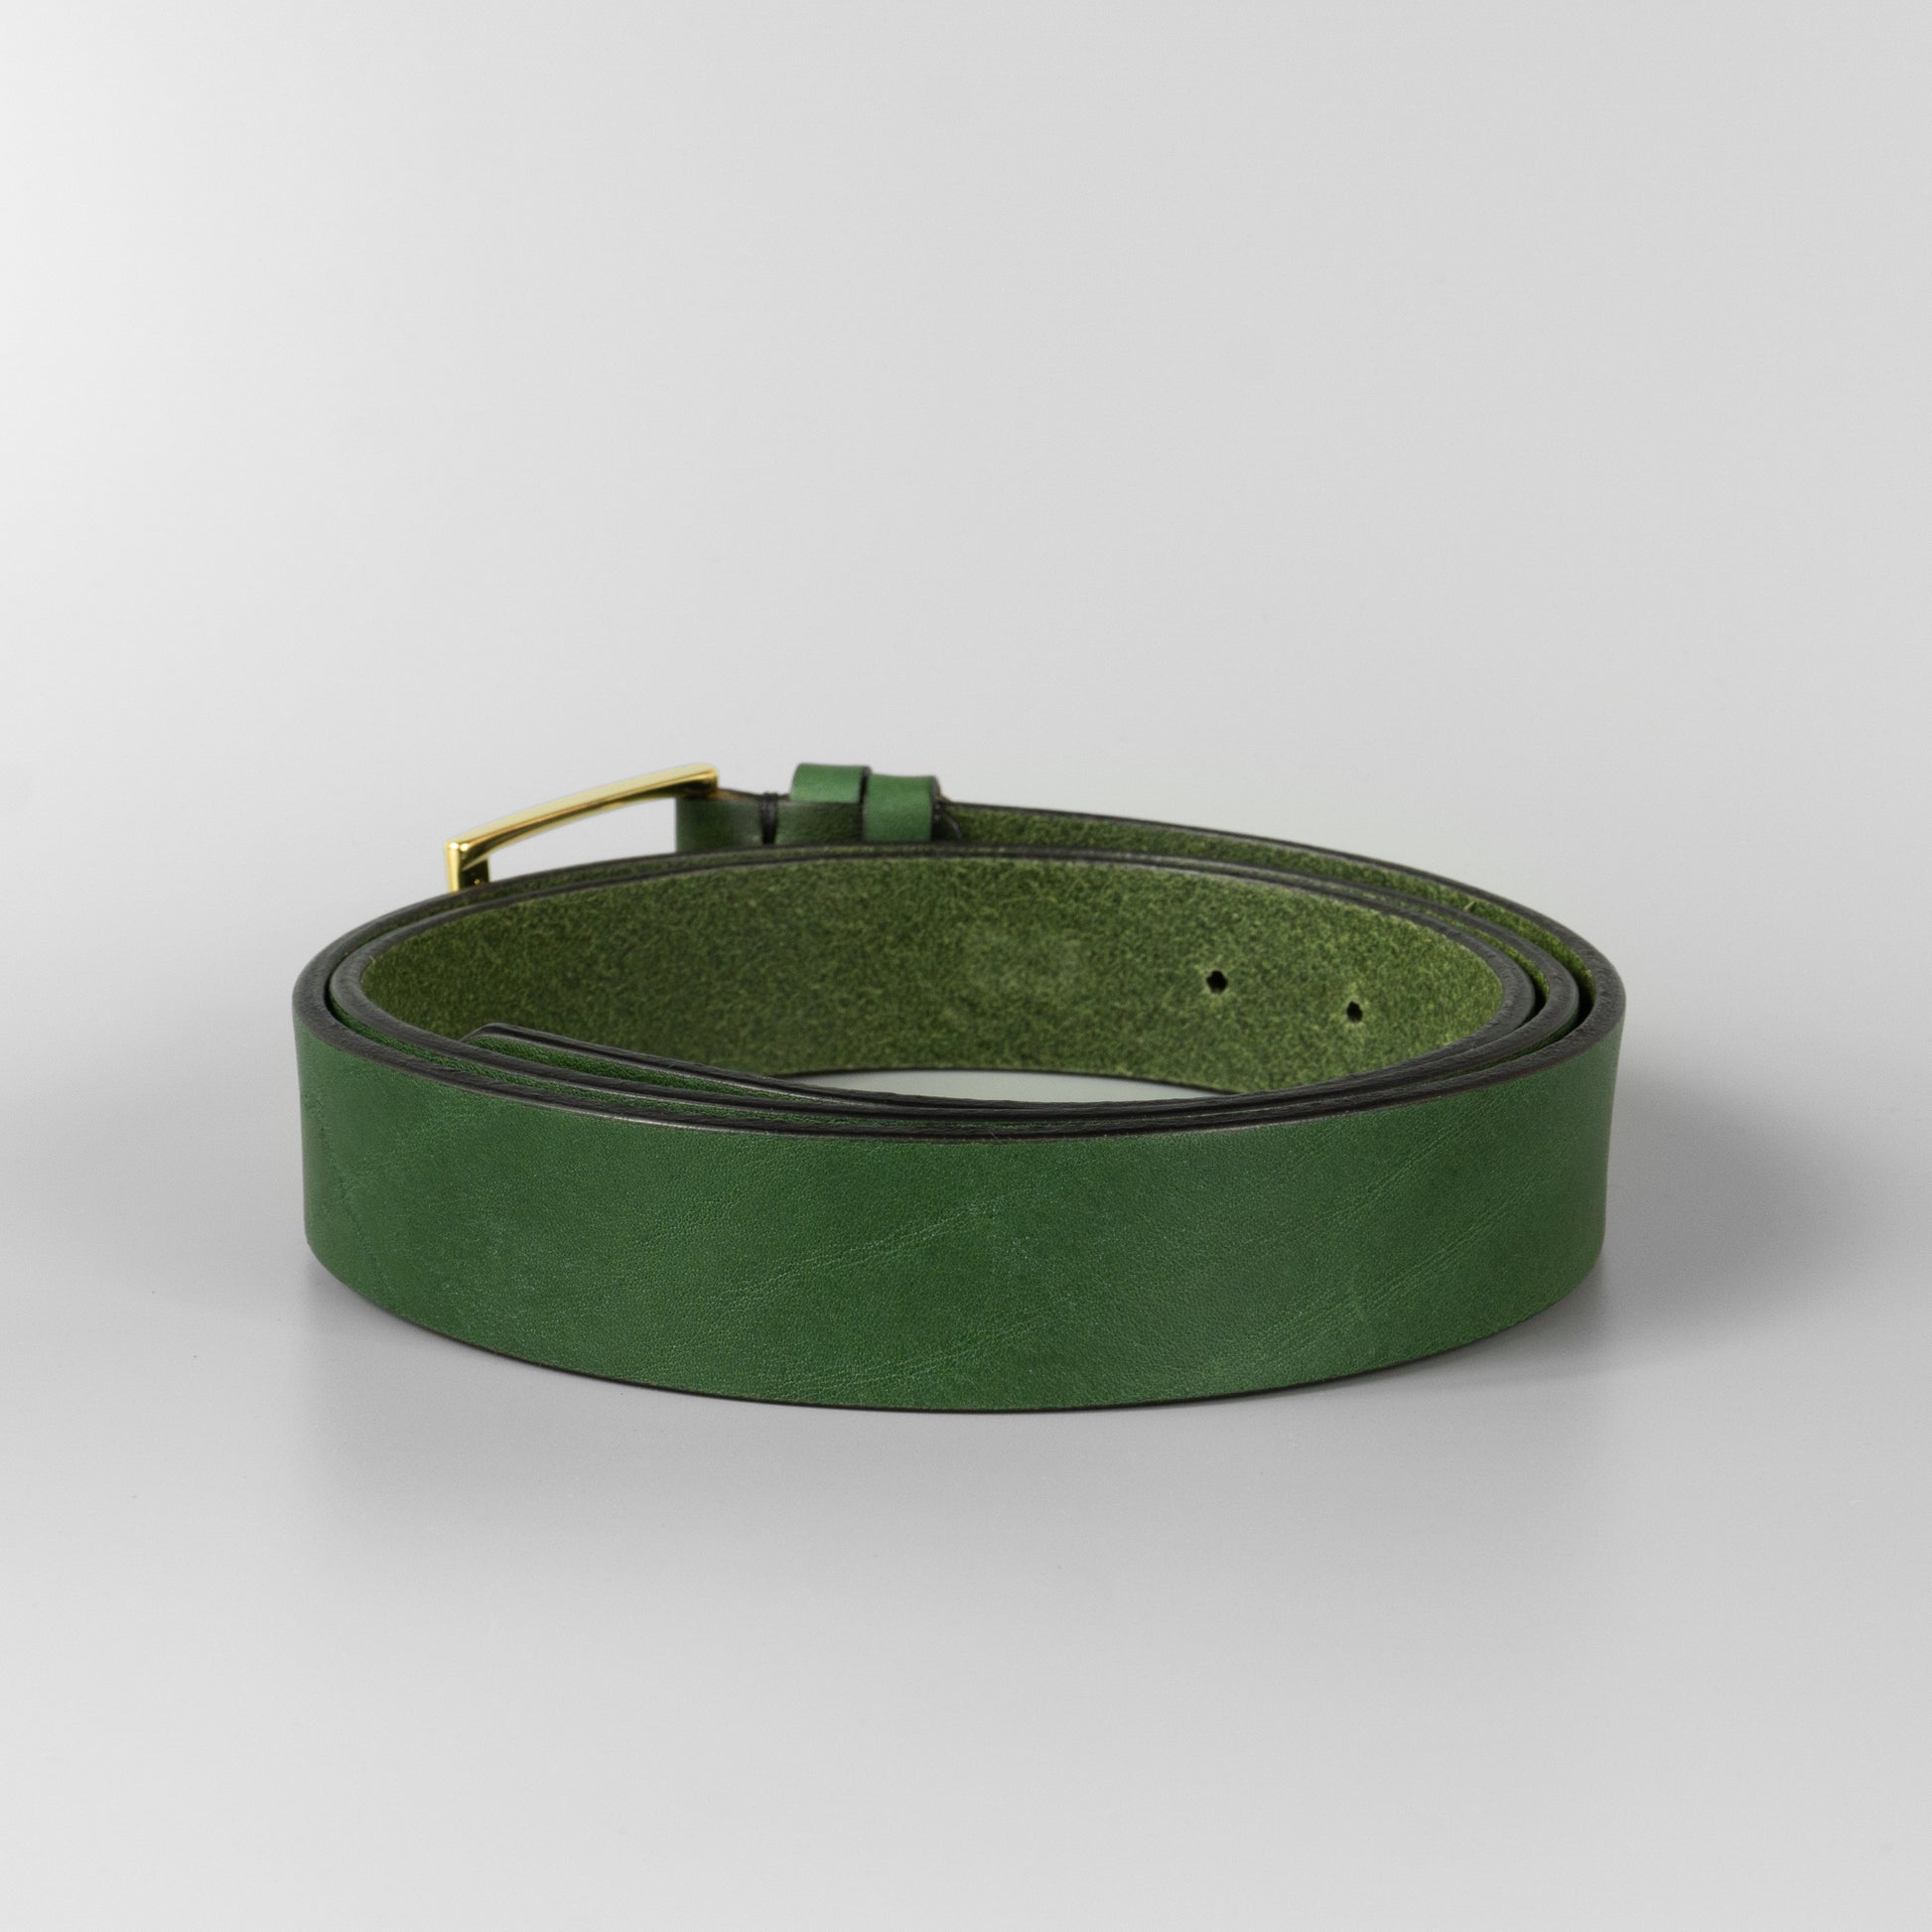 Zelený pánsky kožený opasok do obleku "Green gold" široký 3 cm